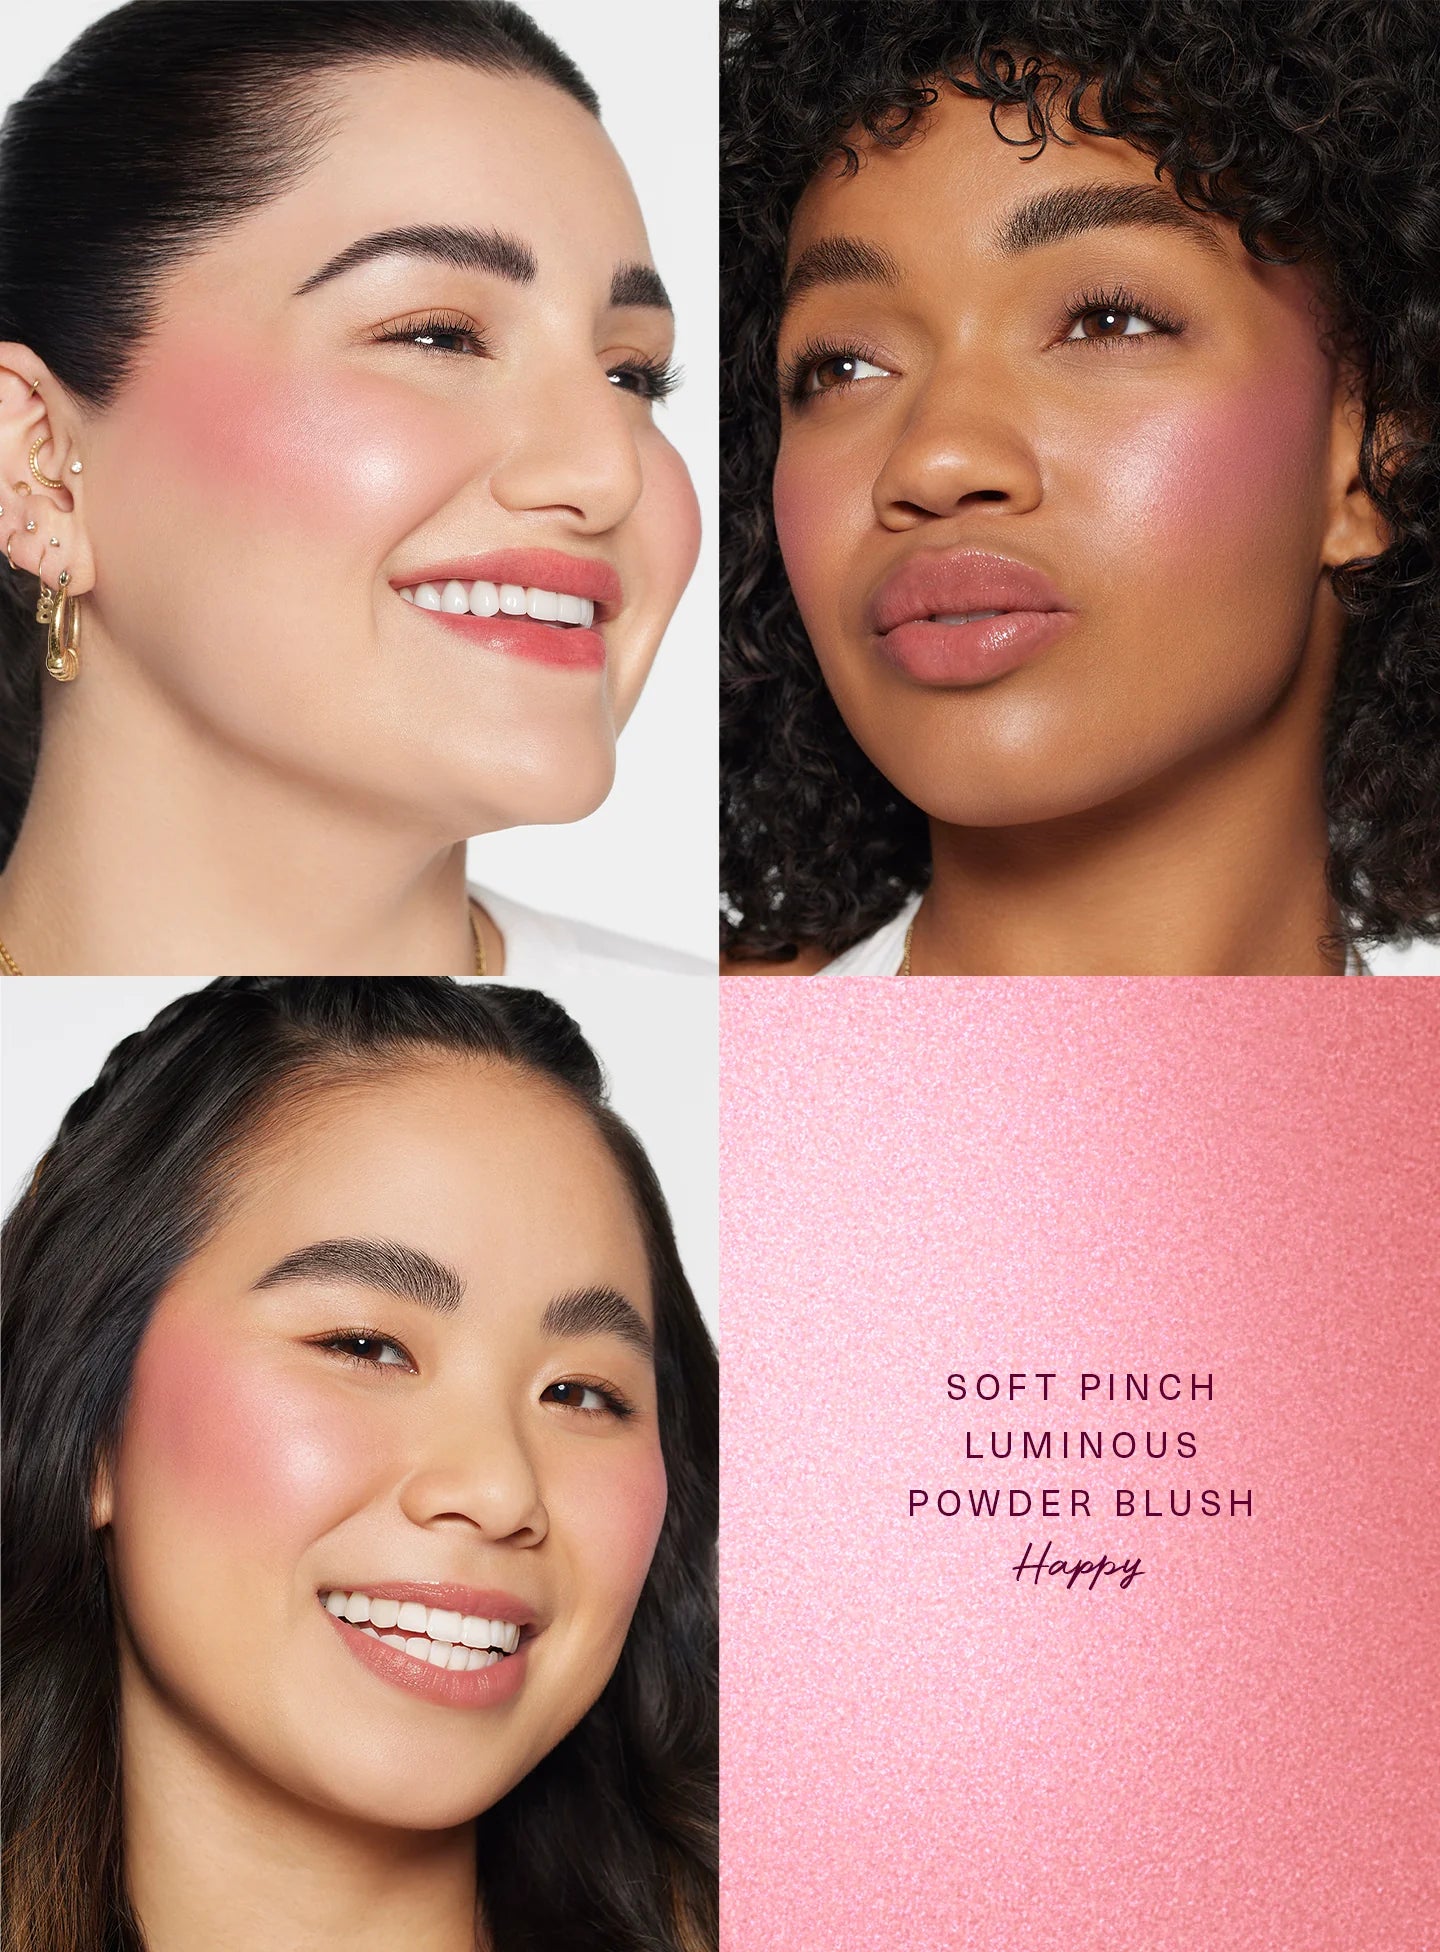 Soft pinch luminous powder blush Rare Beauty